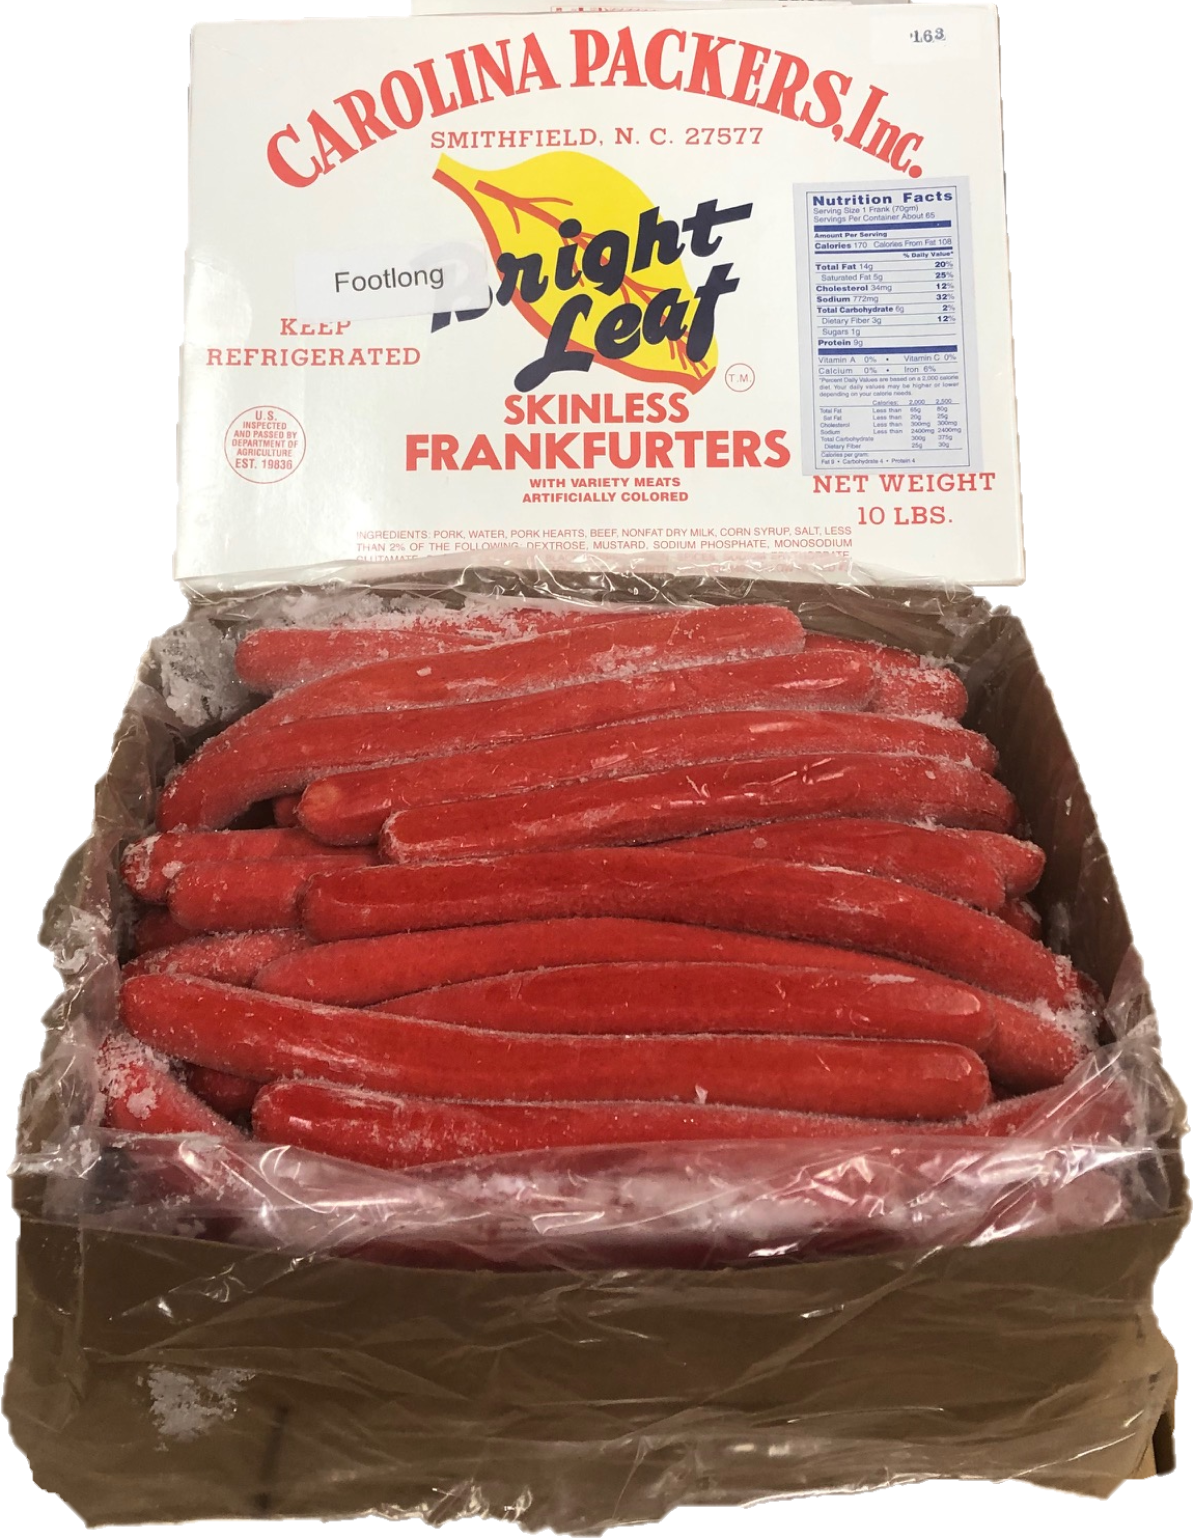 Bermad År Selskabelig Bright Leaf Footlong Franks for Restaurants (10 lbs) | Carolina Packers Inc  - Bright Leaf Hotdogs